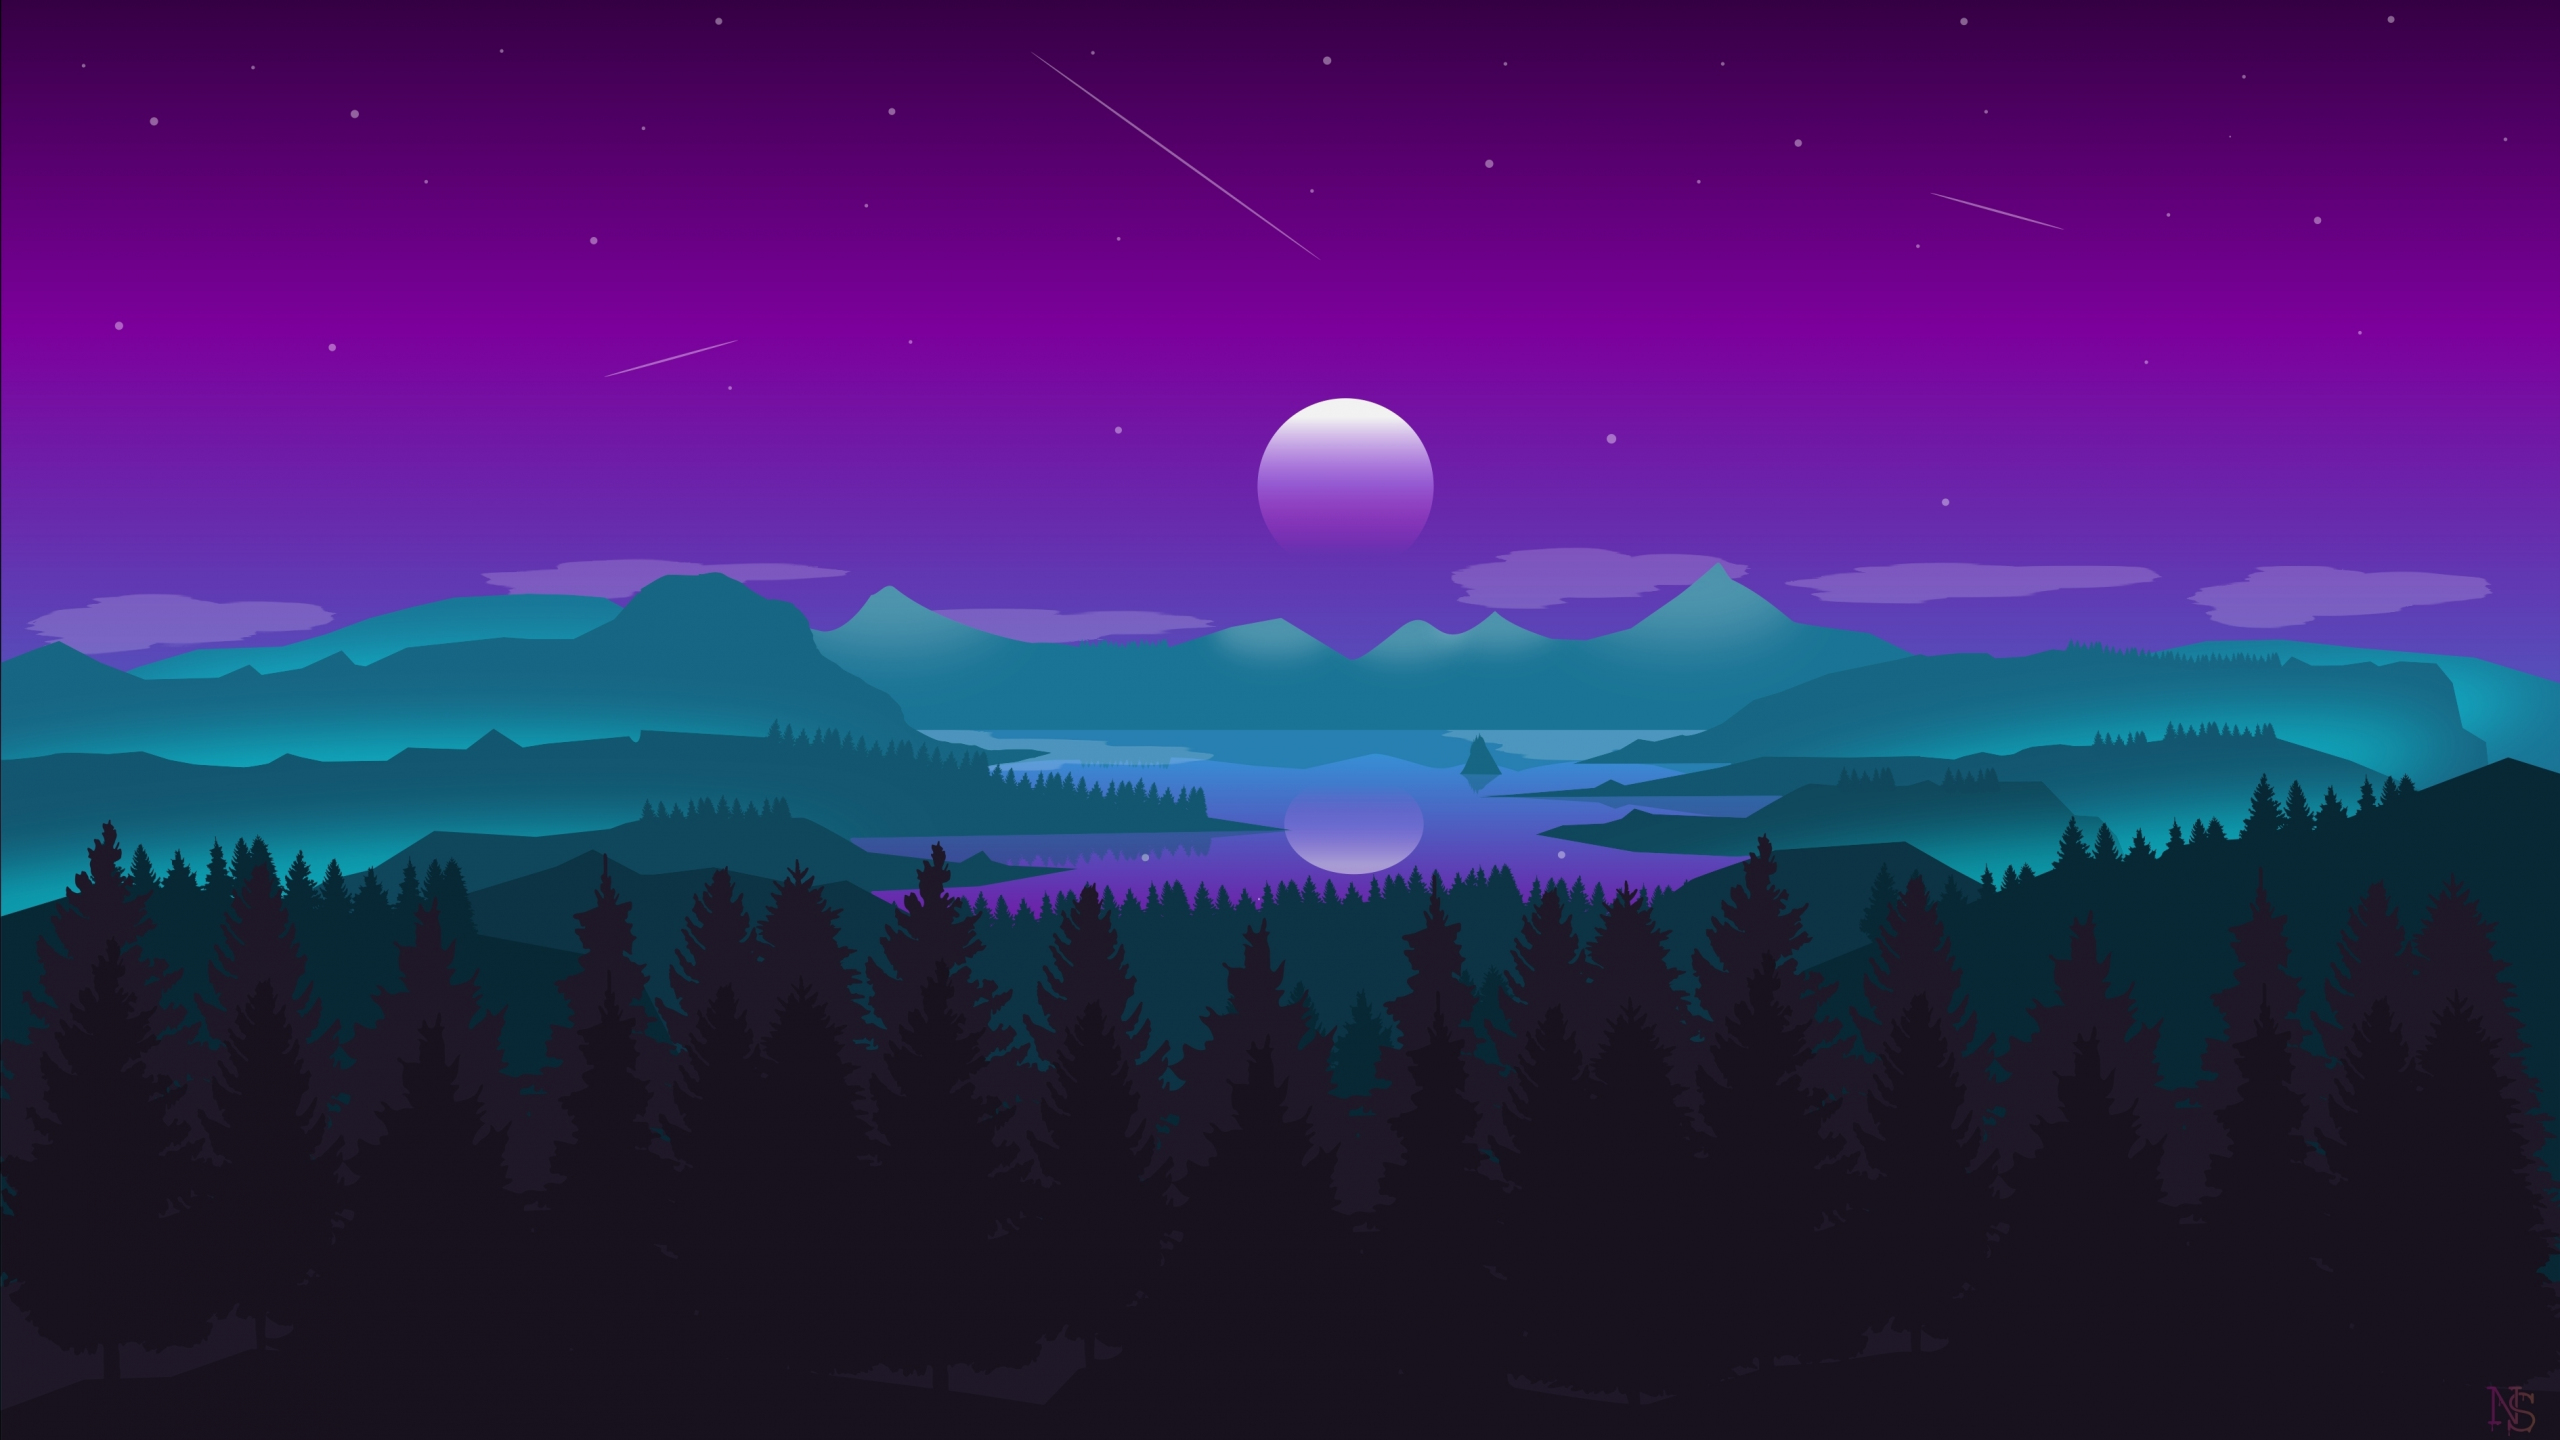 Bạn muốn trang trí cho máy tính xách tay của mình một bức hình nền đẹp mắt? Hãy thử tải hình nền 2560x1440 với chân trời, mặt trăng, núi và rừng. Chất lượng độ phân giải cao này sẽ mang đến trải nghiệm tuyệt vời cho màn hình desktop của bạn.